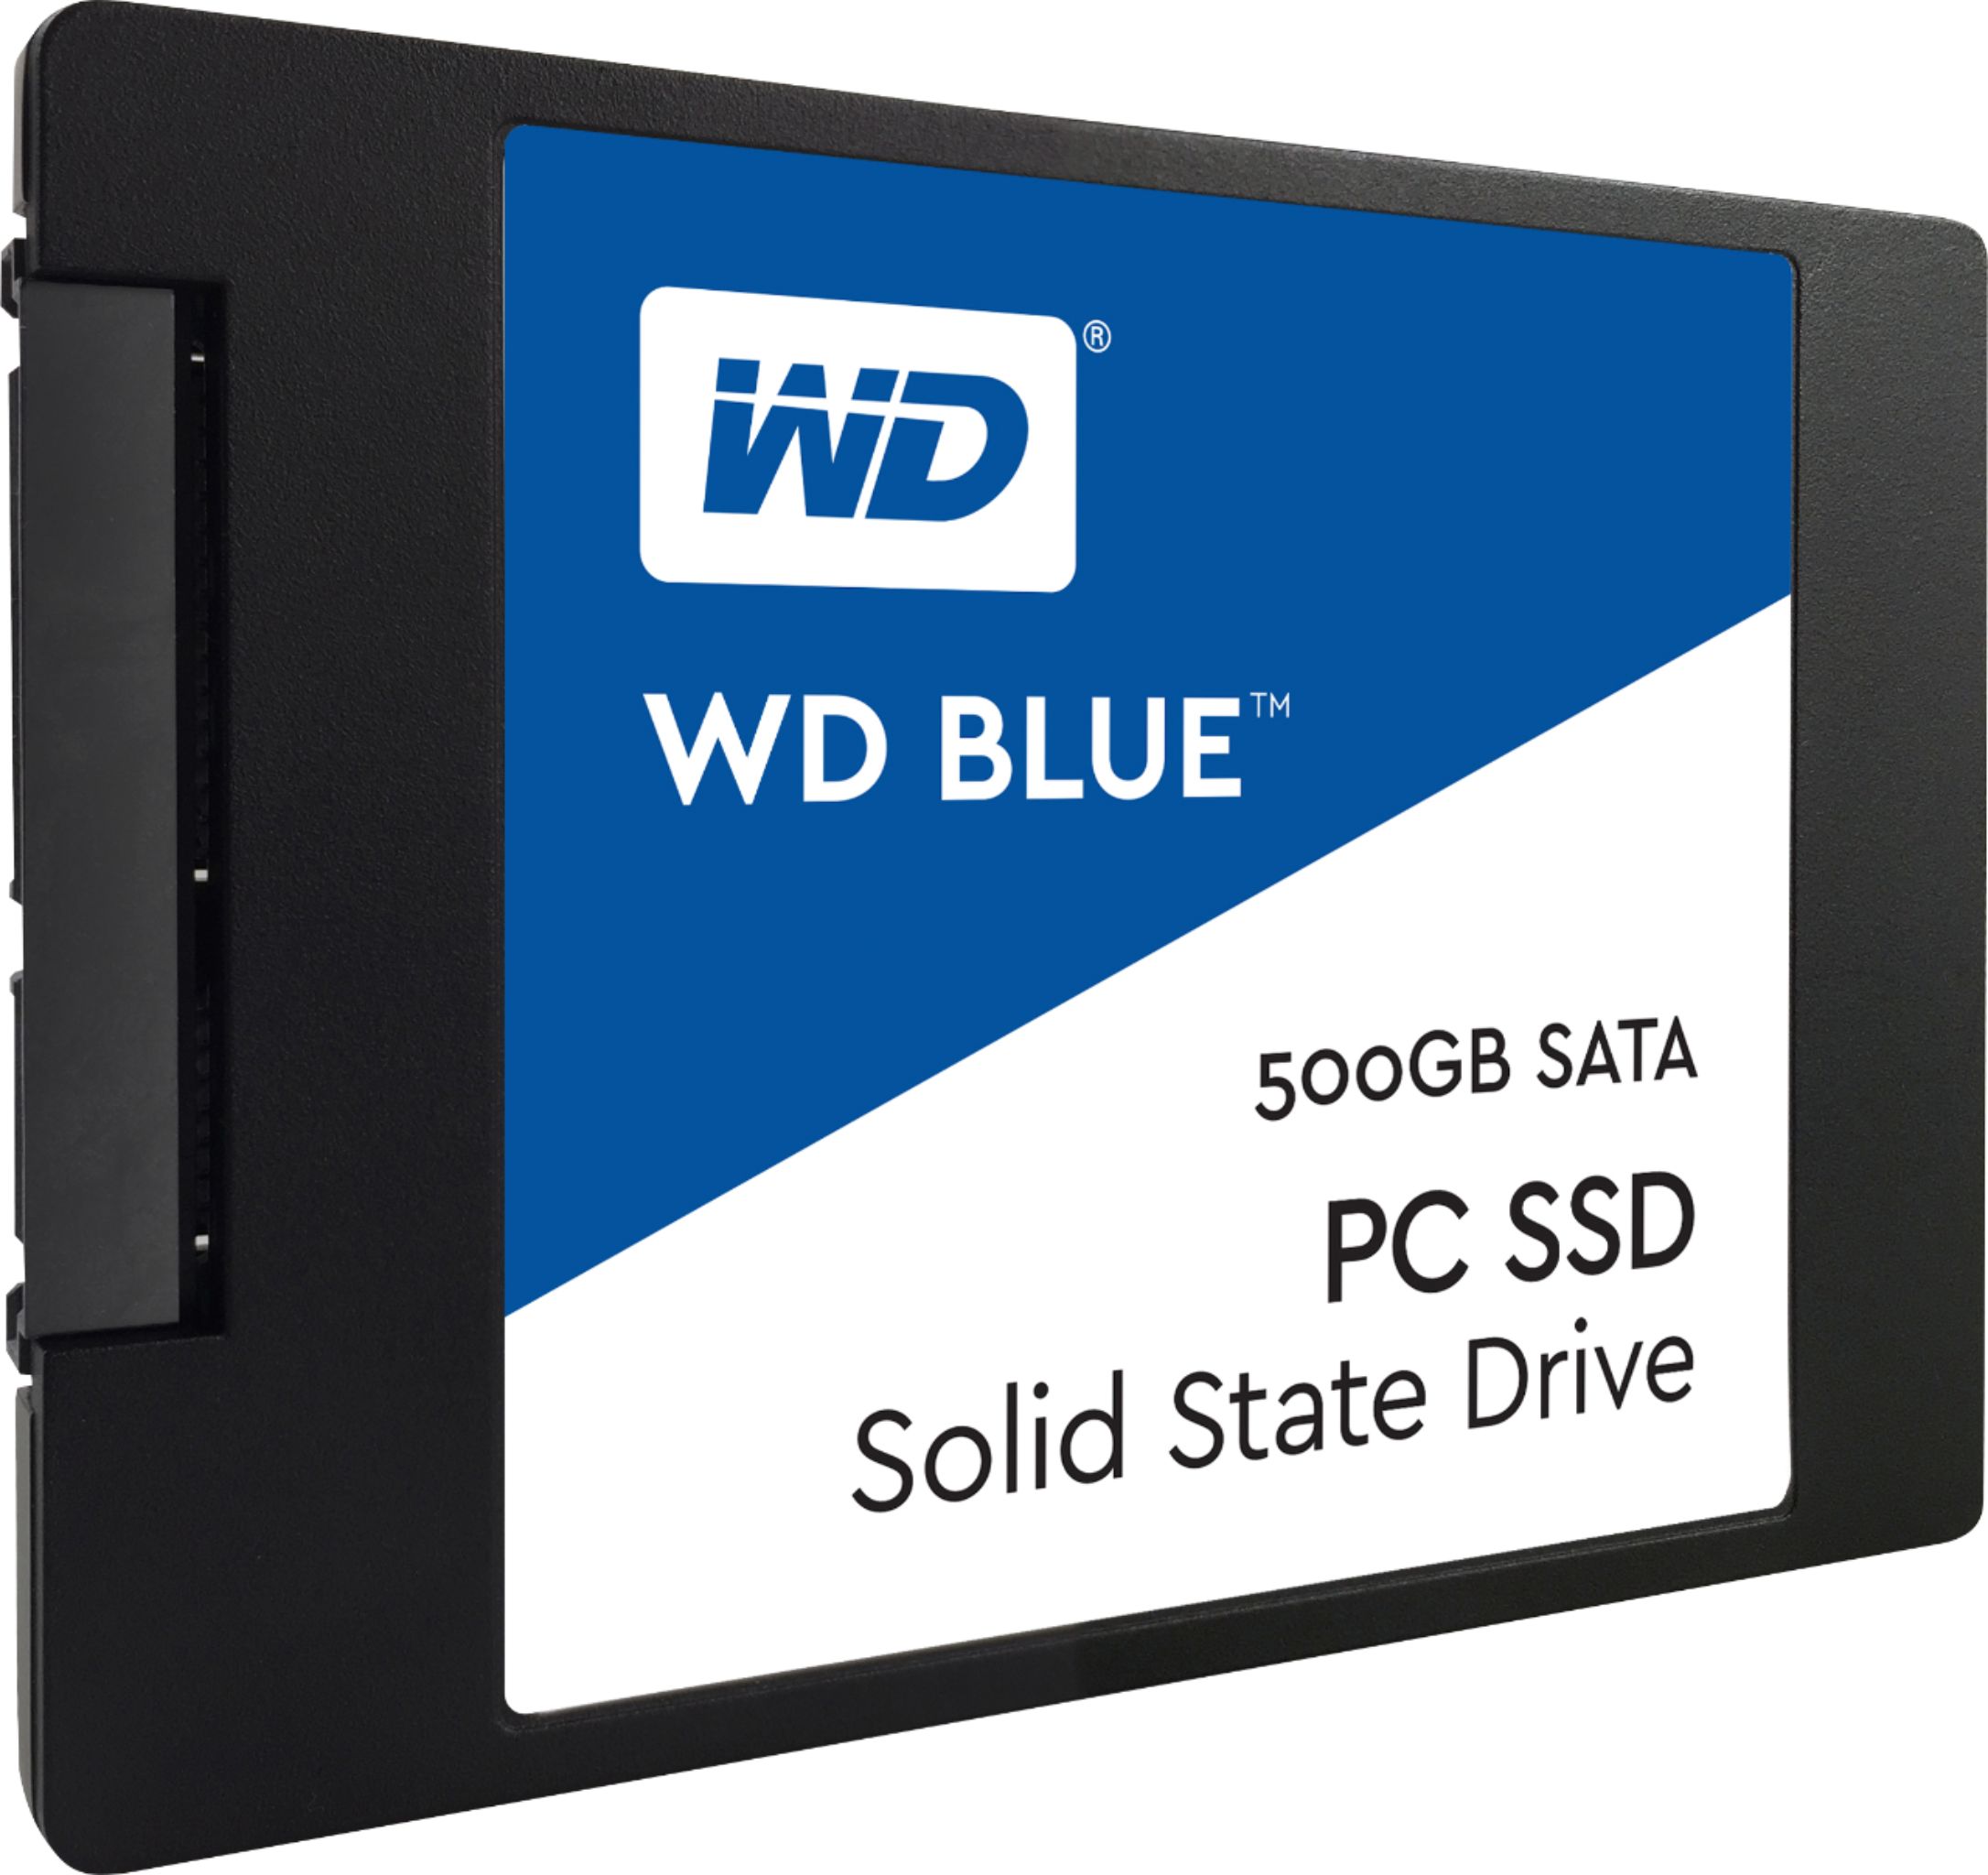 WD Blue 500GB Internal SSD - Best Buy